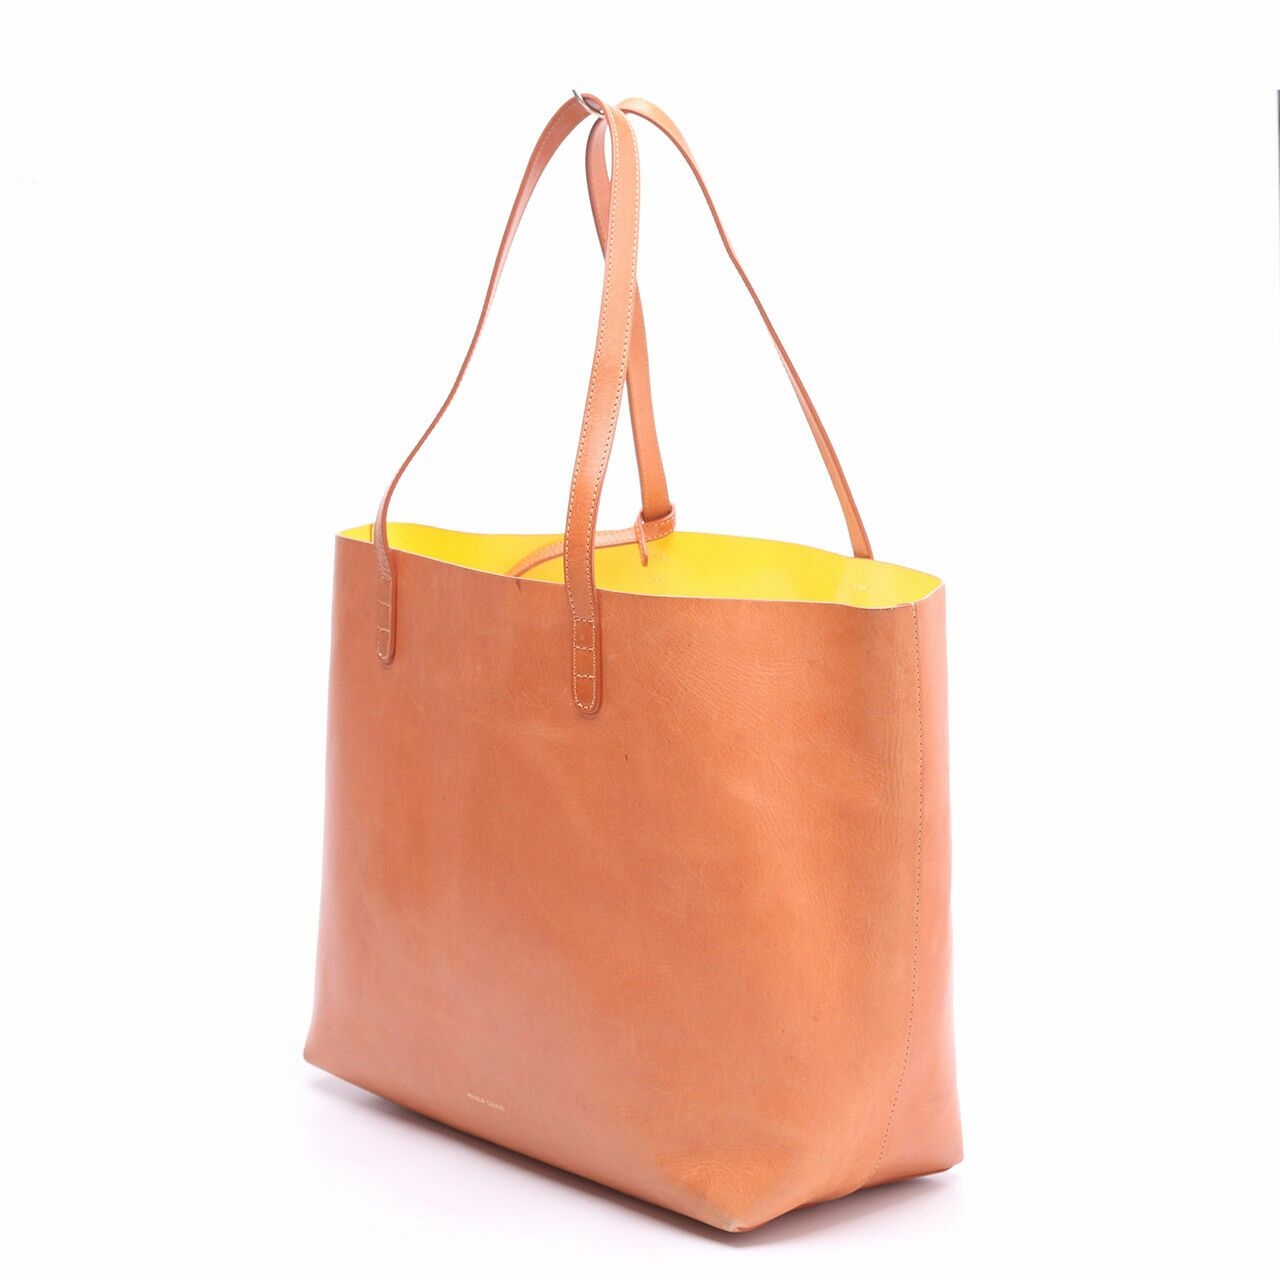 Mansur Gavriel Tangerine Brandy Tote Bag